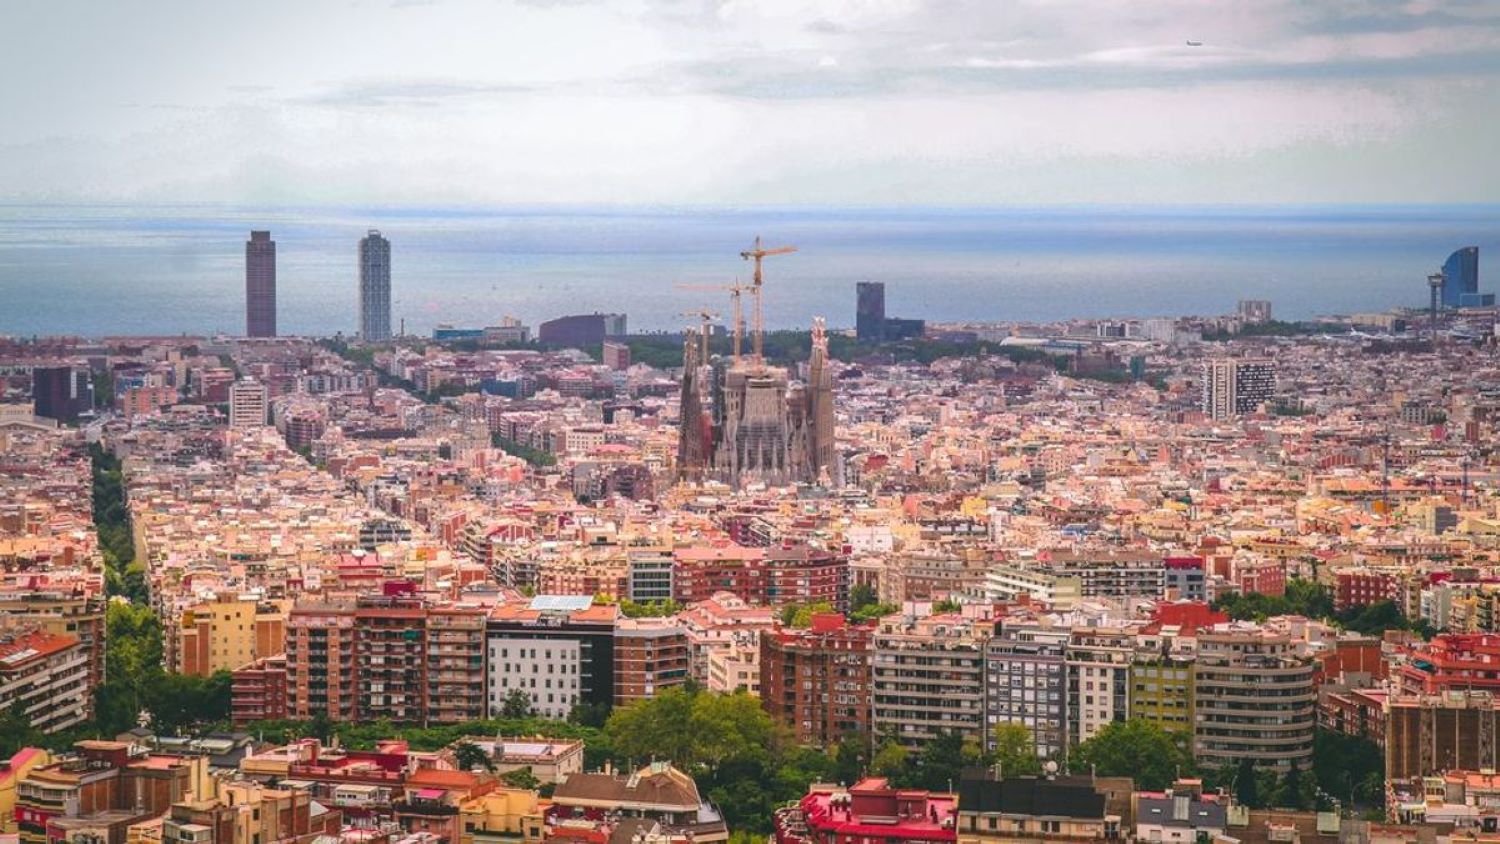 Sin habitaciones libres en Barcelona. Y la culpa es del Mobile